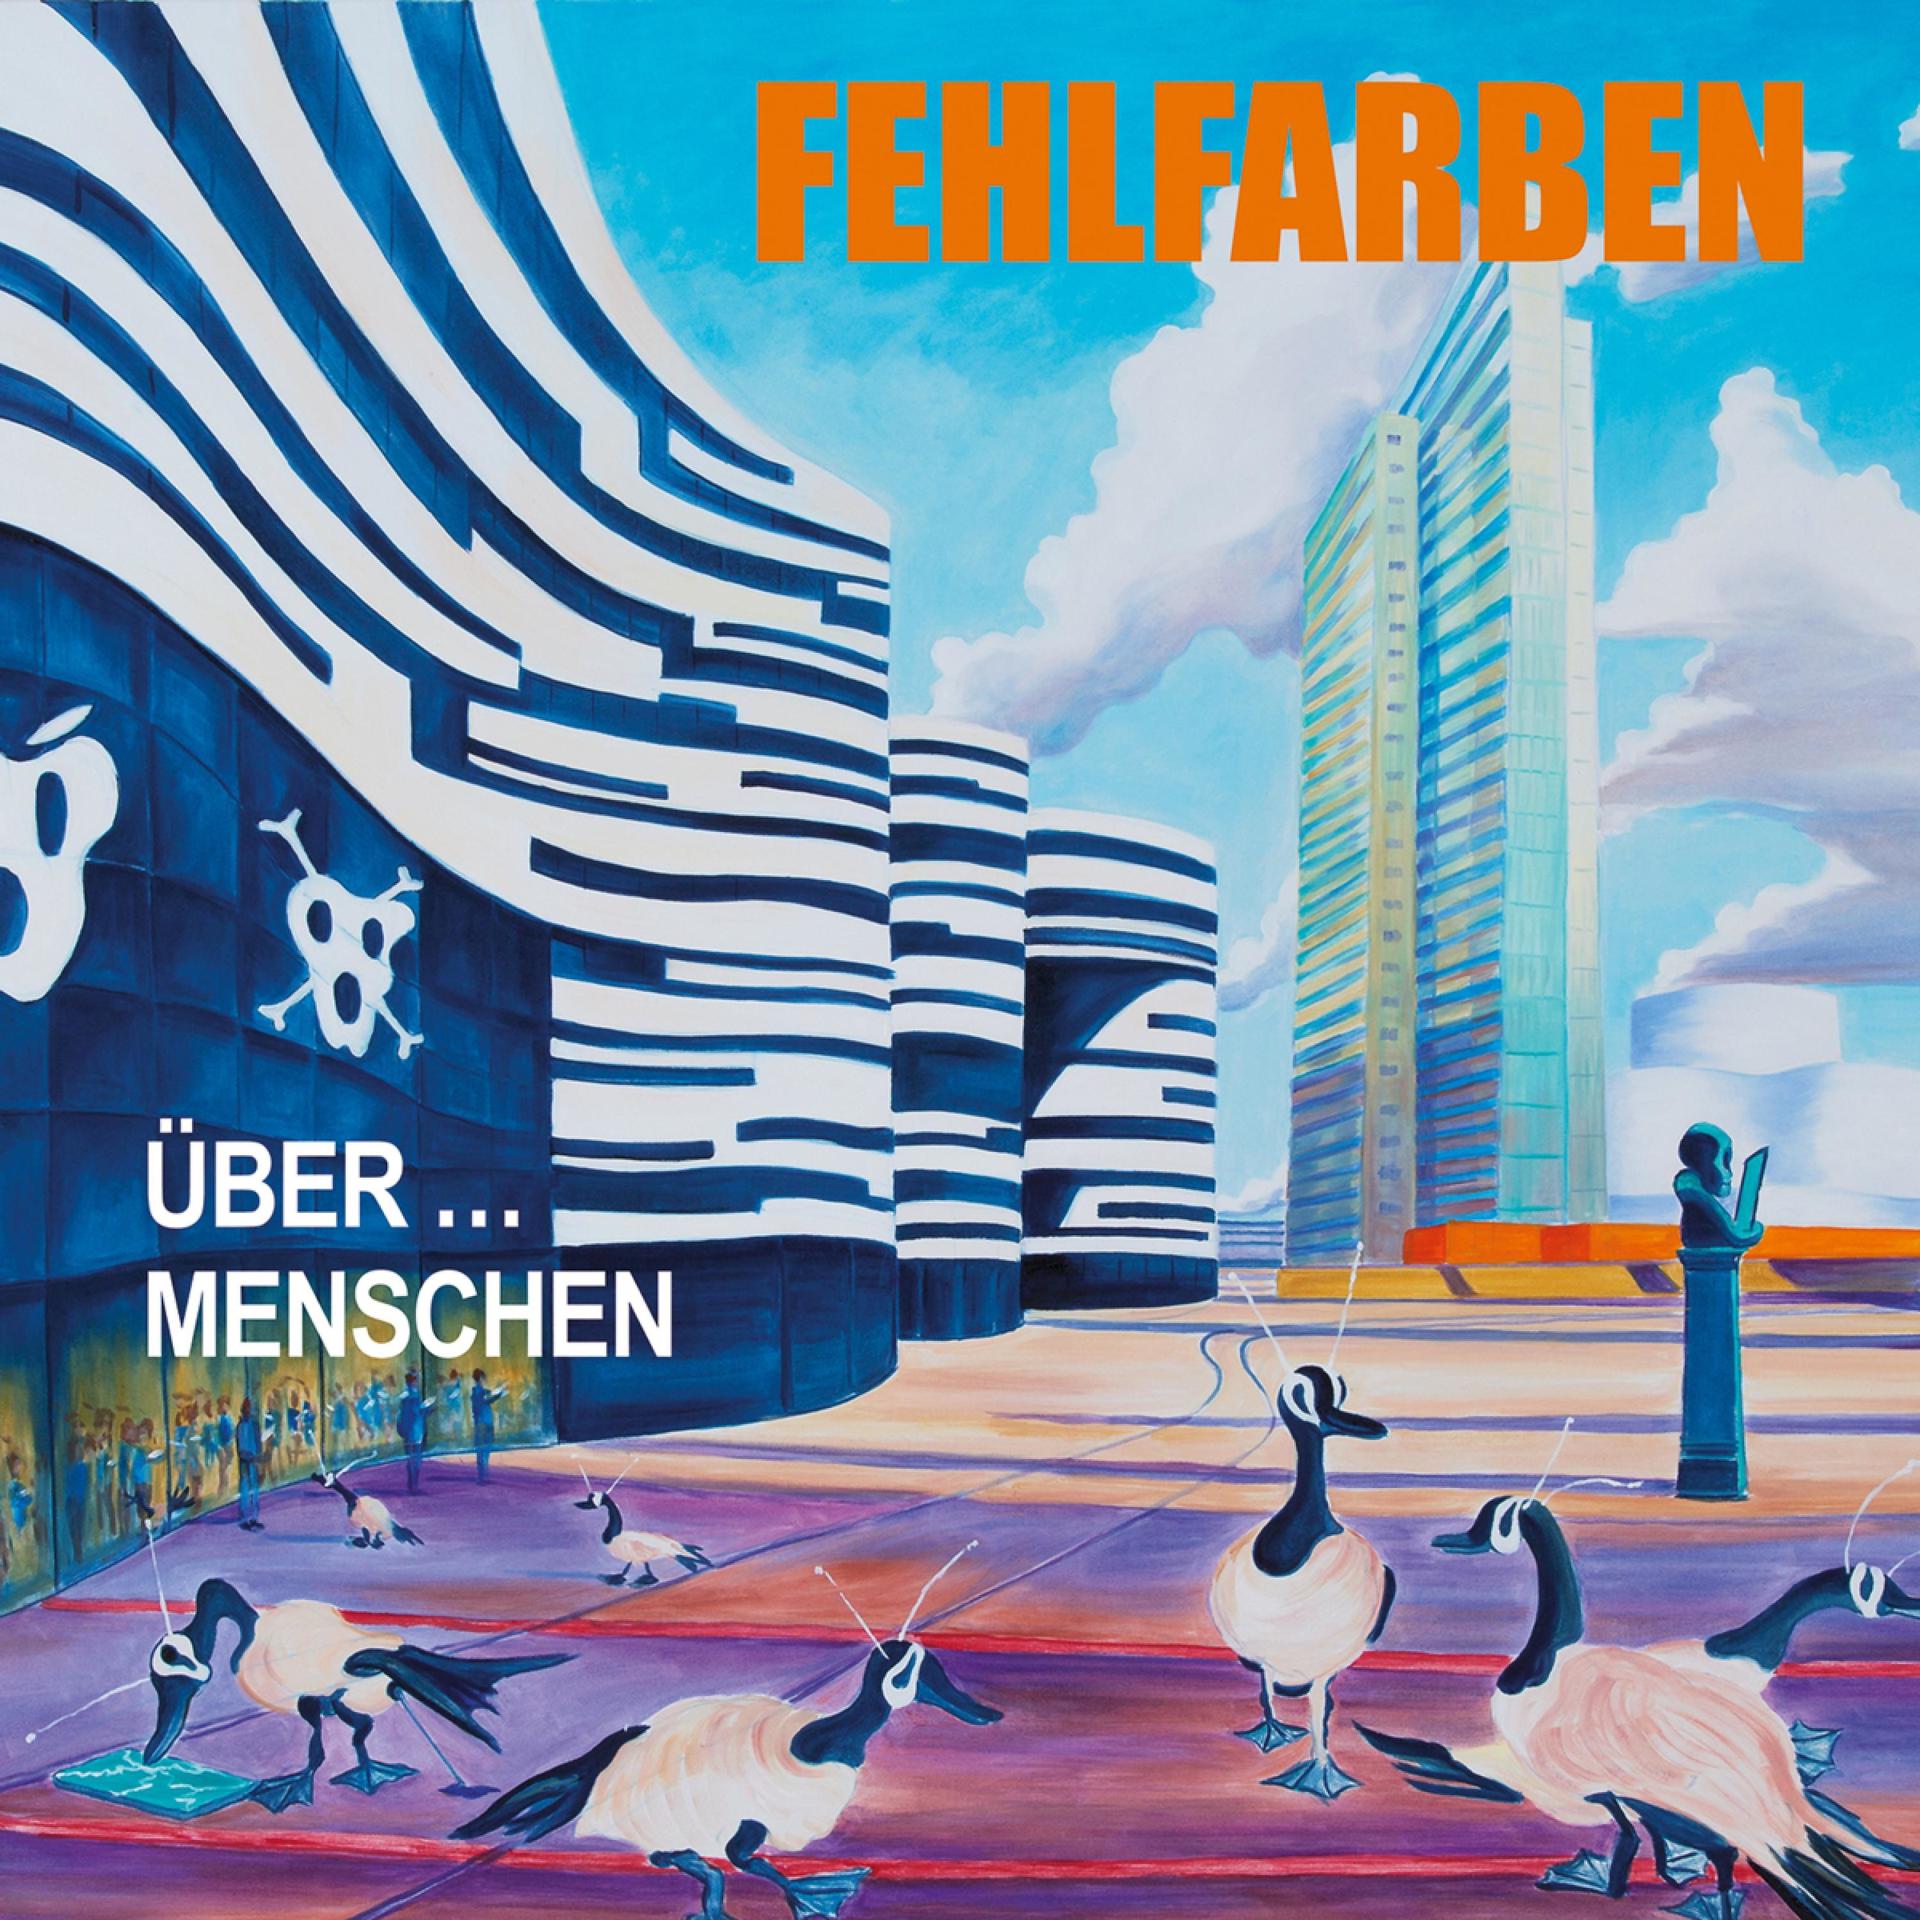 Постер к треку Fehlfarben - Urban Innozenz